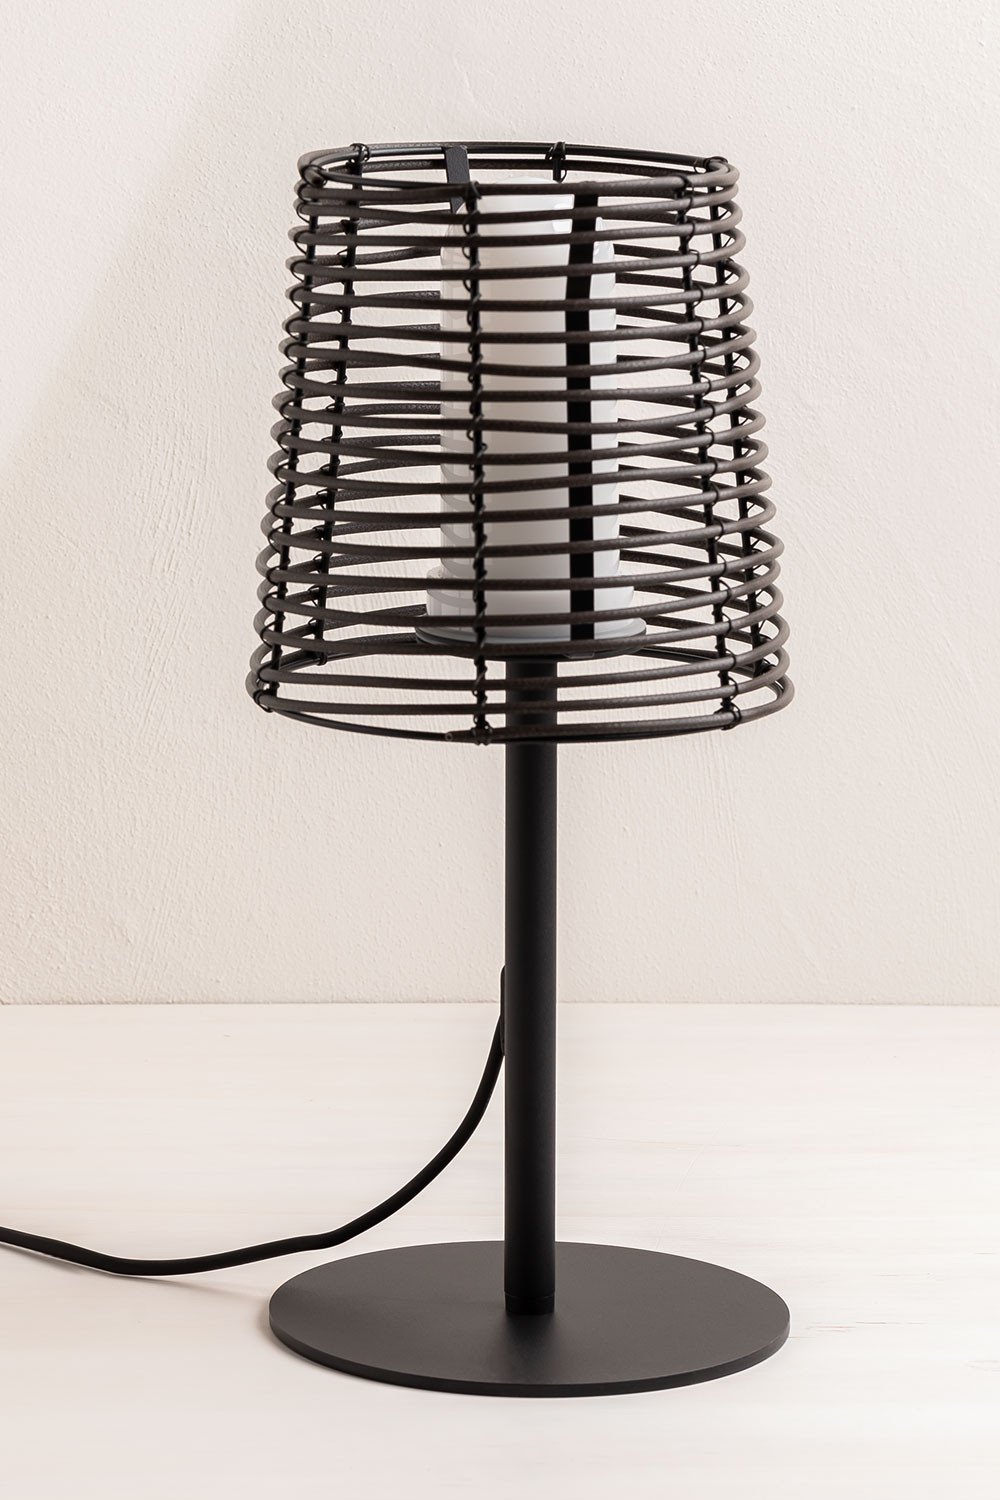 Buitentafellamp met Bissel-houteffect, galerij beeld 1